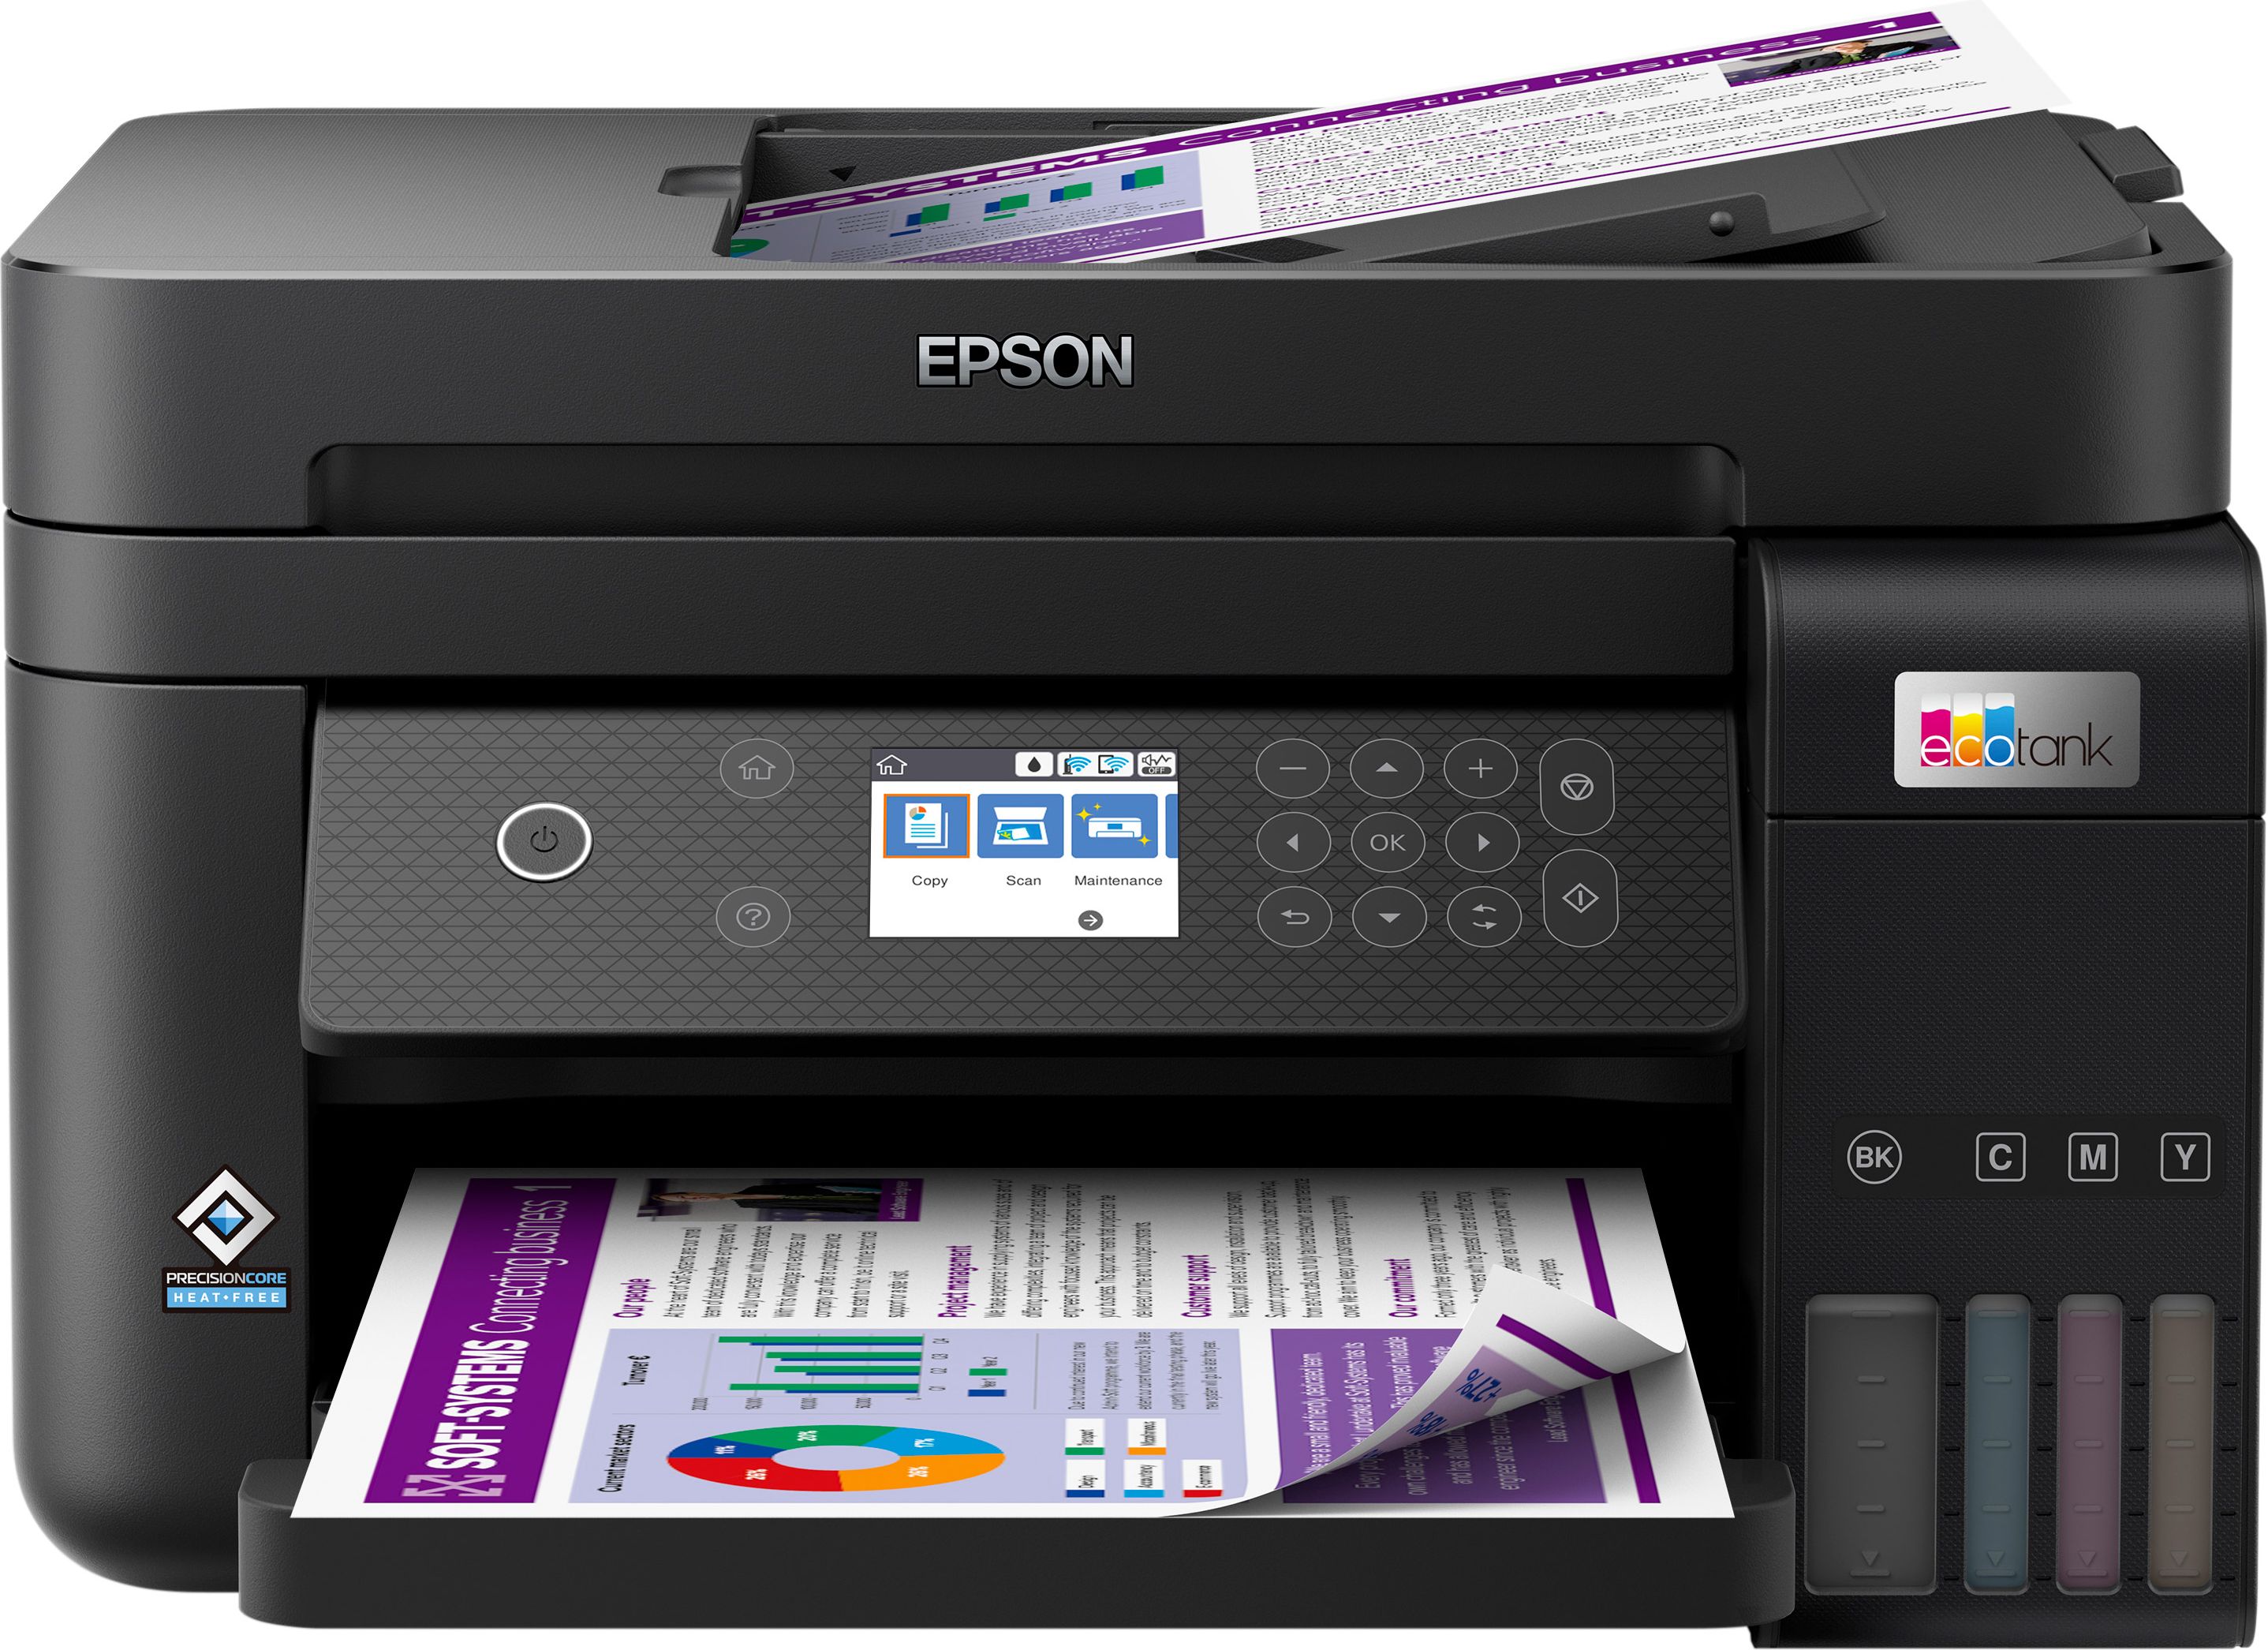 Epson EcoTank ET-3850 Inkjet All In One Wireless Printer - Black, Black